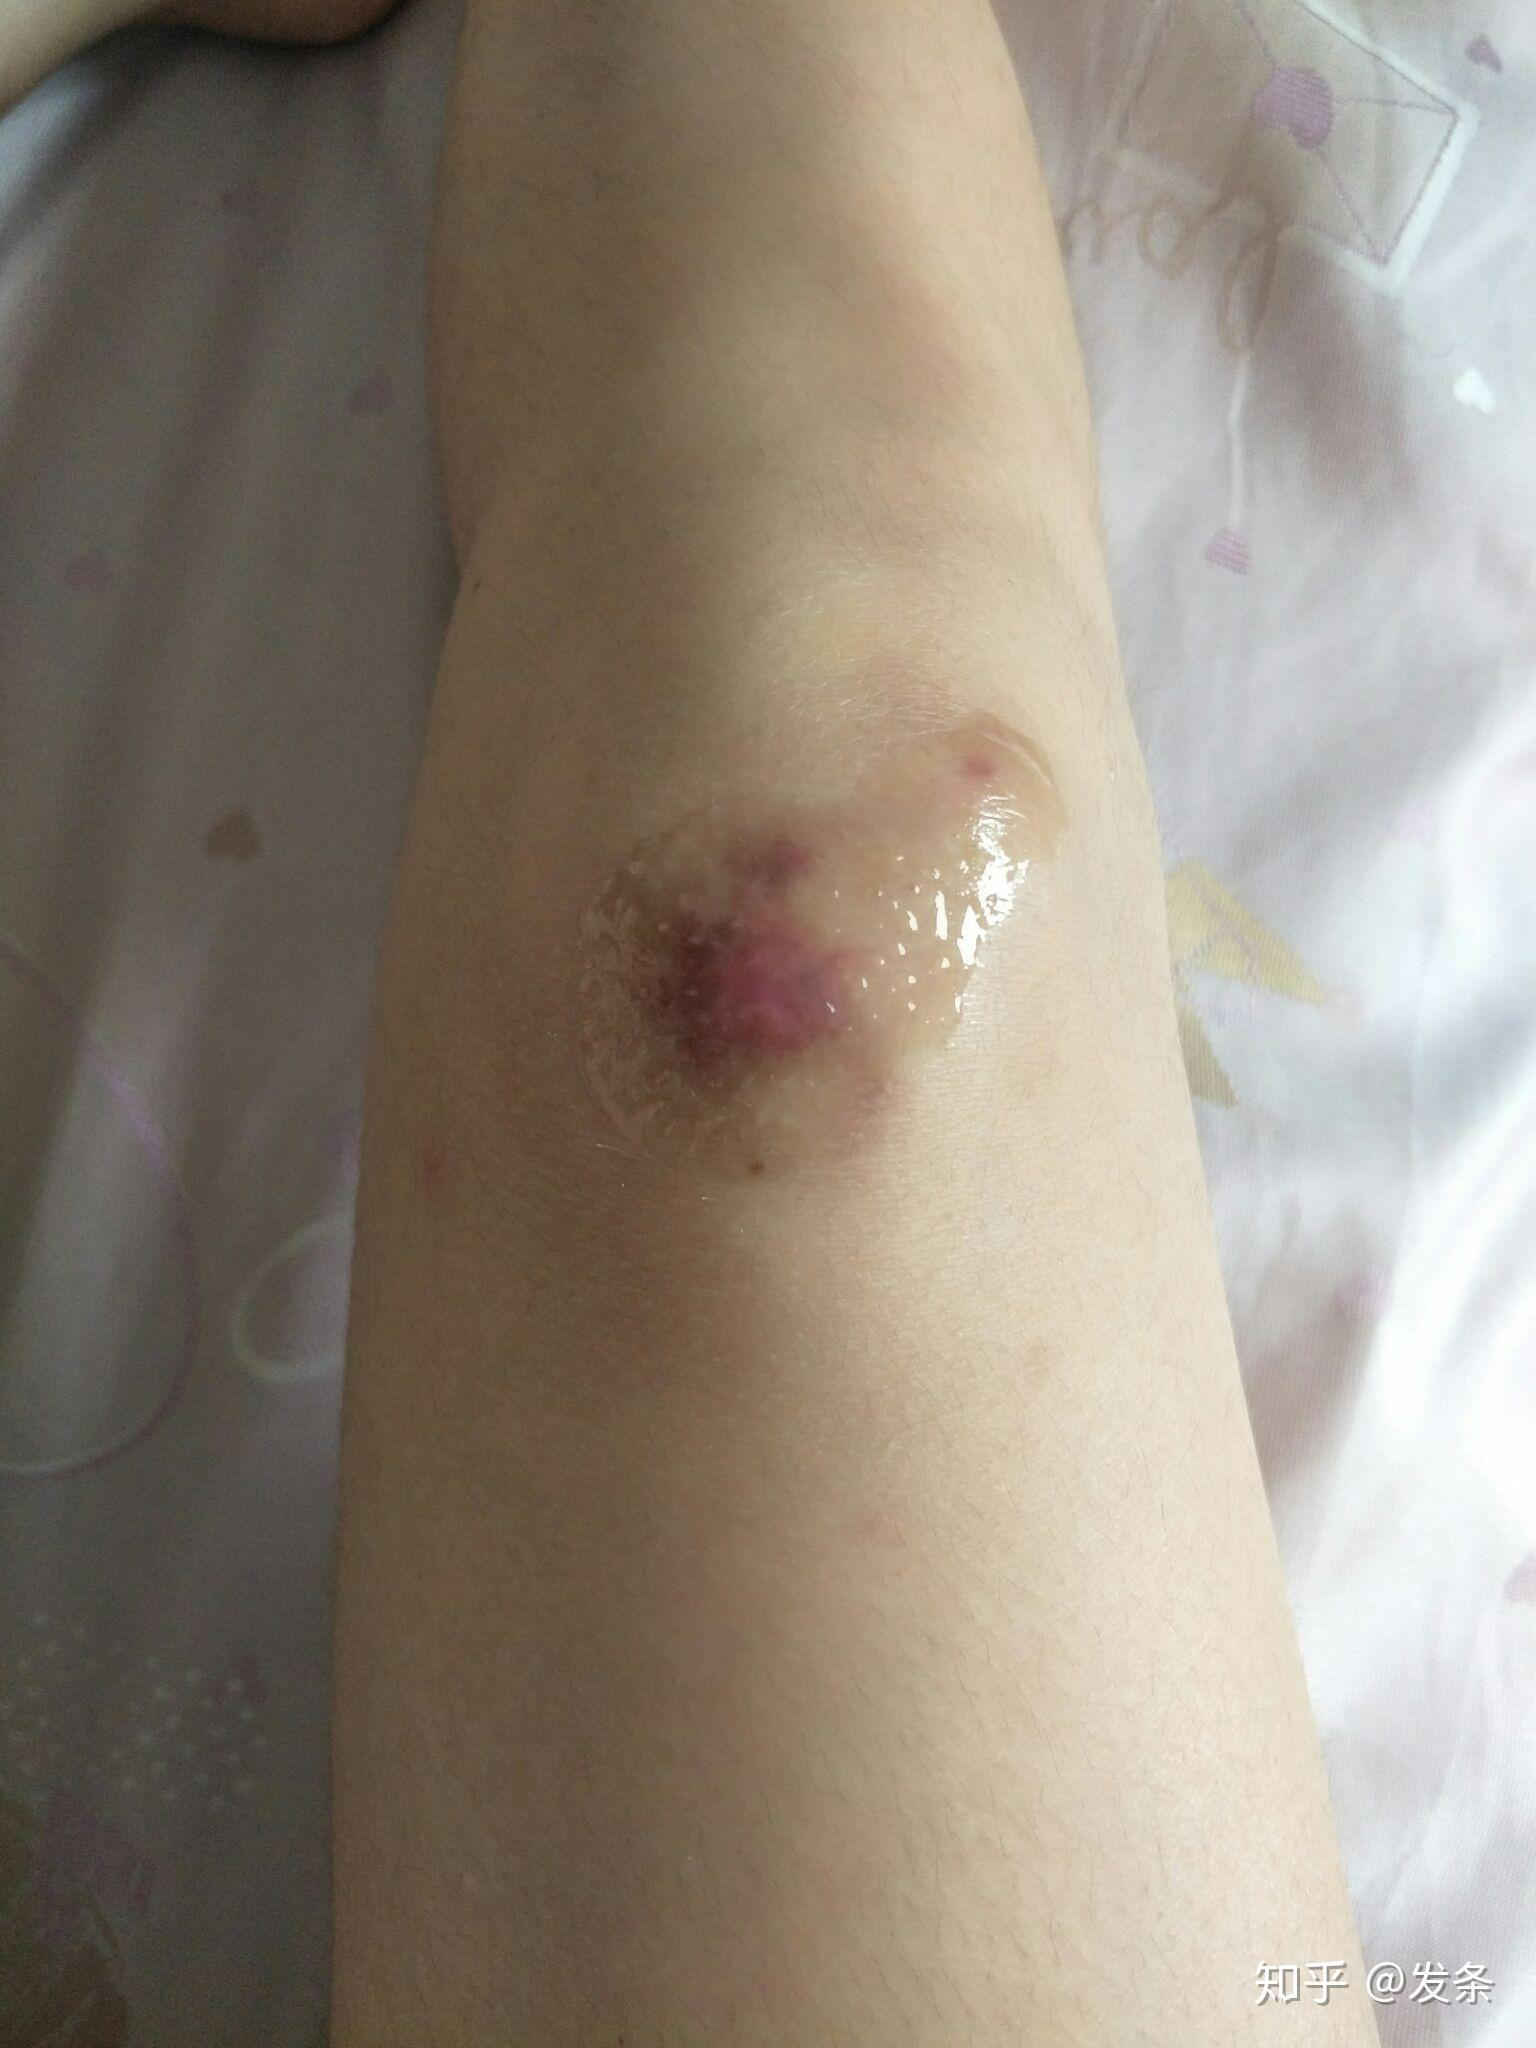 女生骑车摔伤腿的照片图片